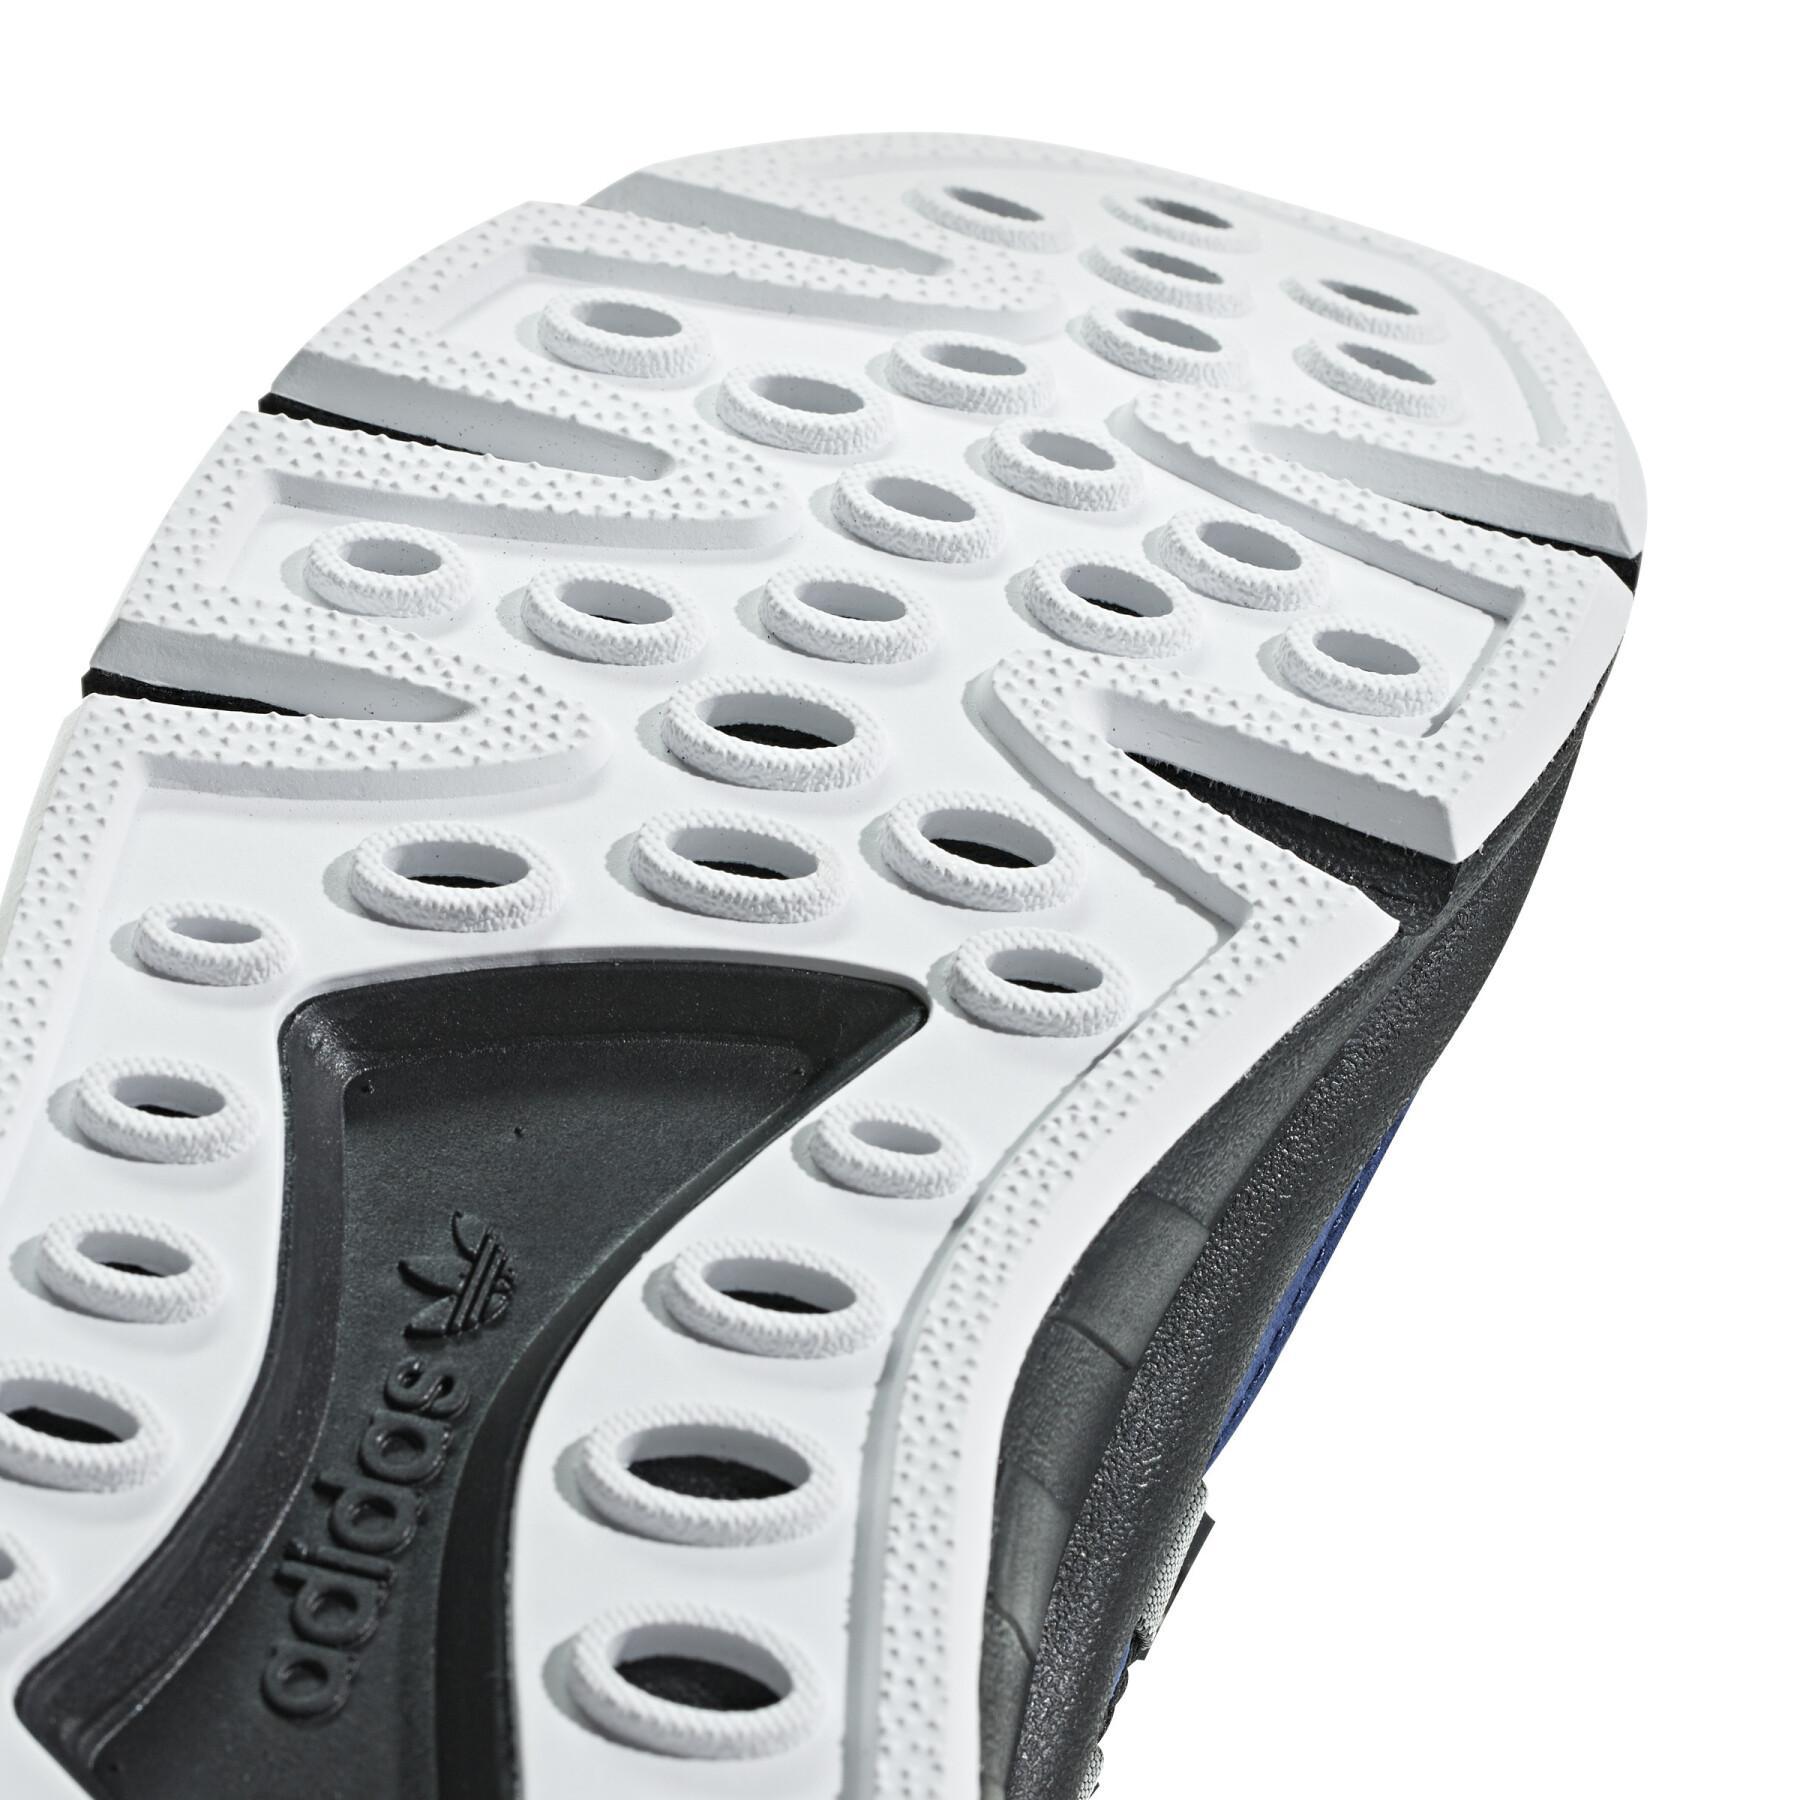 Zapatillas adidas EQT Support Mid ADV Primeknit